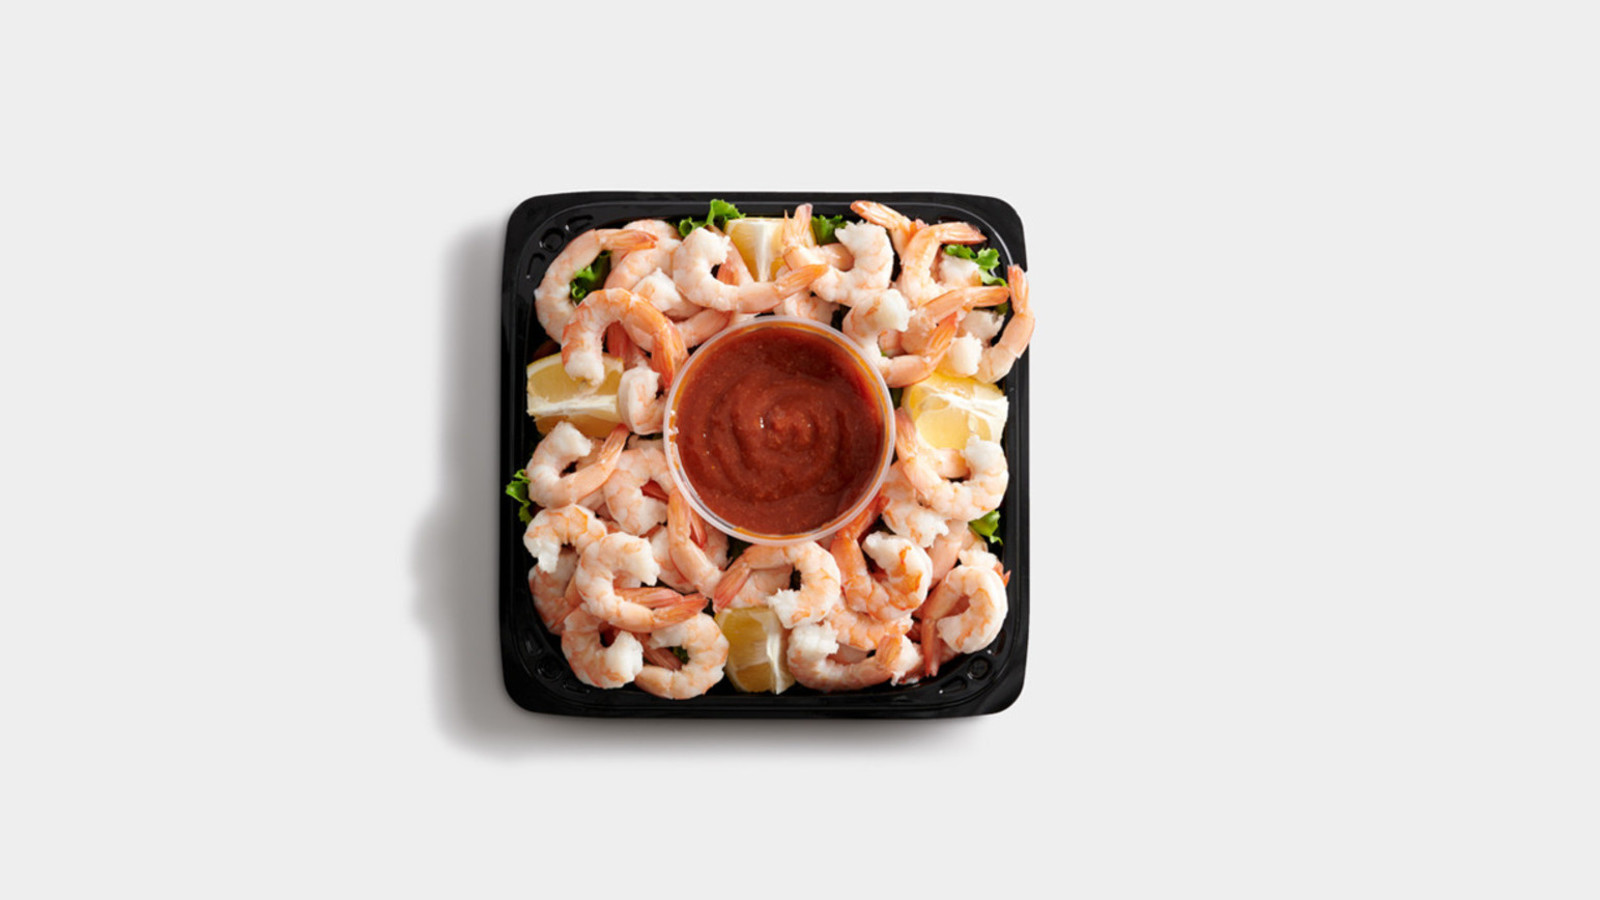 Jumbo Shrimp Cocktail Platter